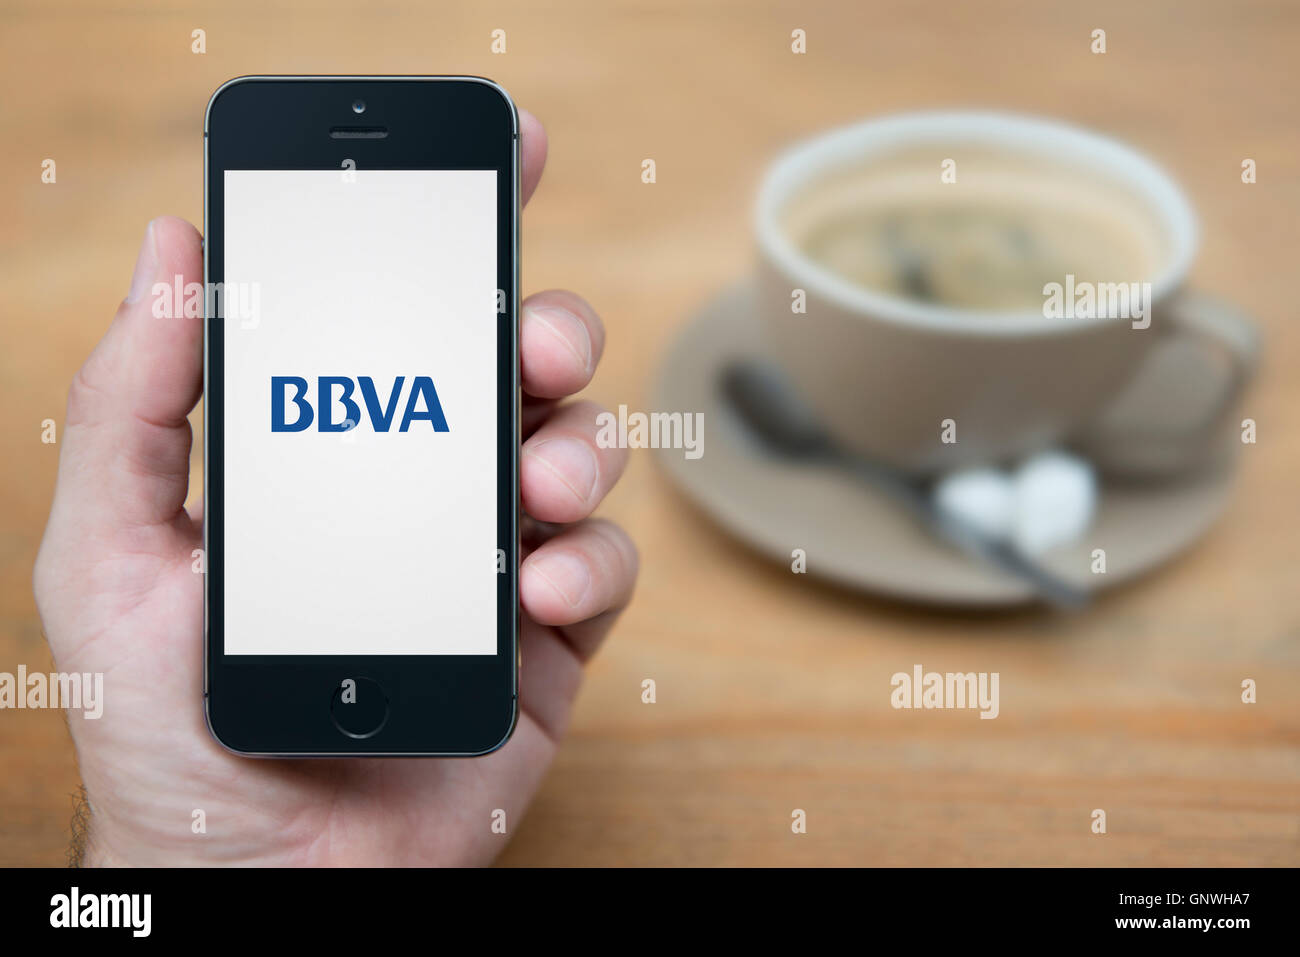 Un uomo guarda al suo iPhone che visualizza il BBVA banca logo, mentre sat con una tazza di caffè (solo uso editoriale). Foto Stock